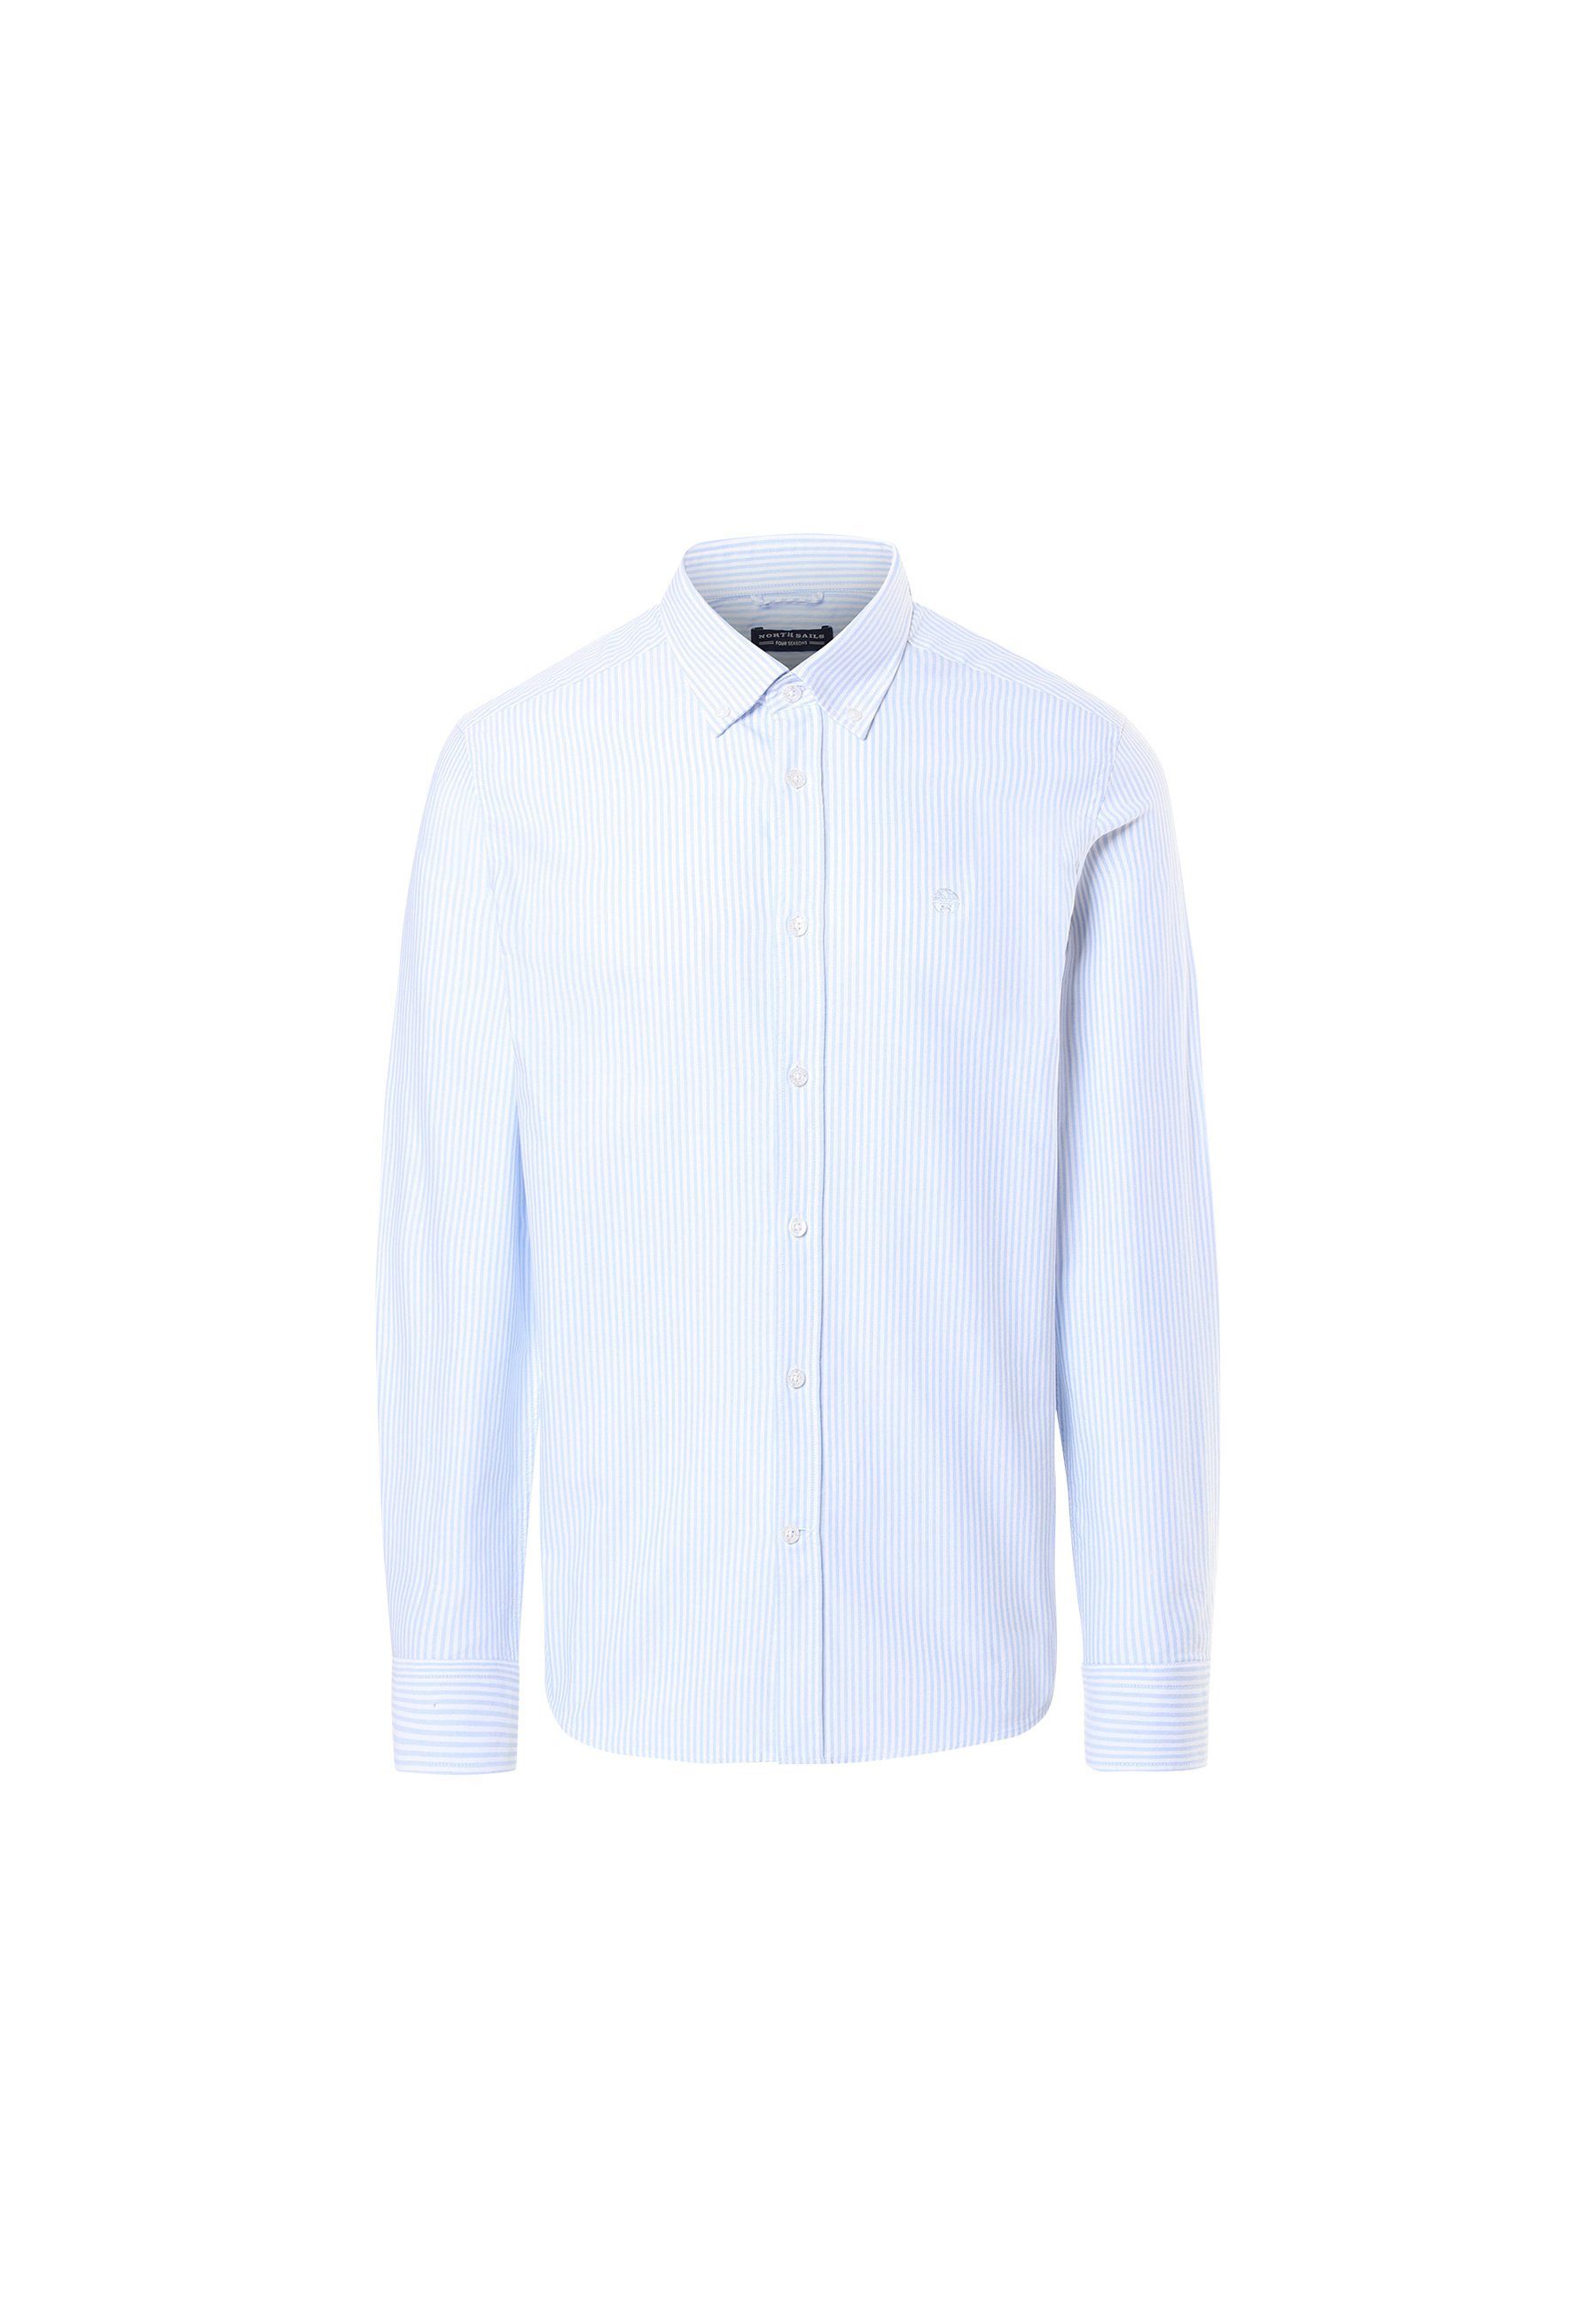 North Sails T-Shirt Herren Businesshembd mit BRIGHT BLUE klassischem Design